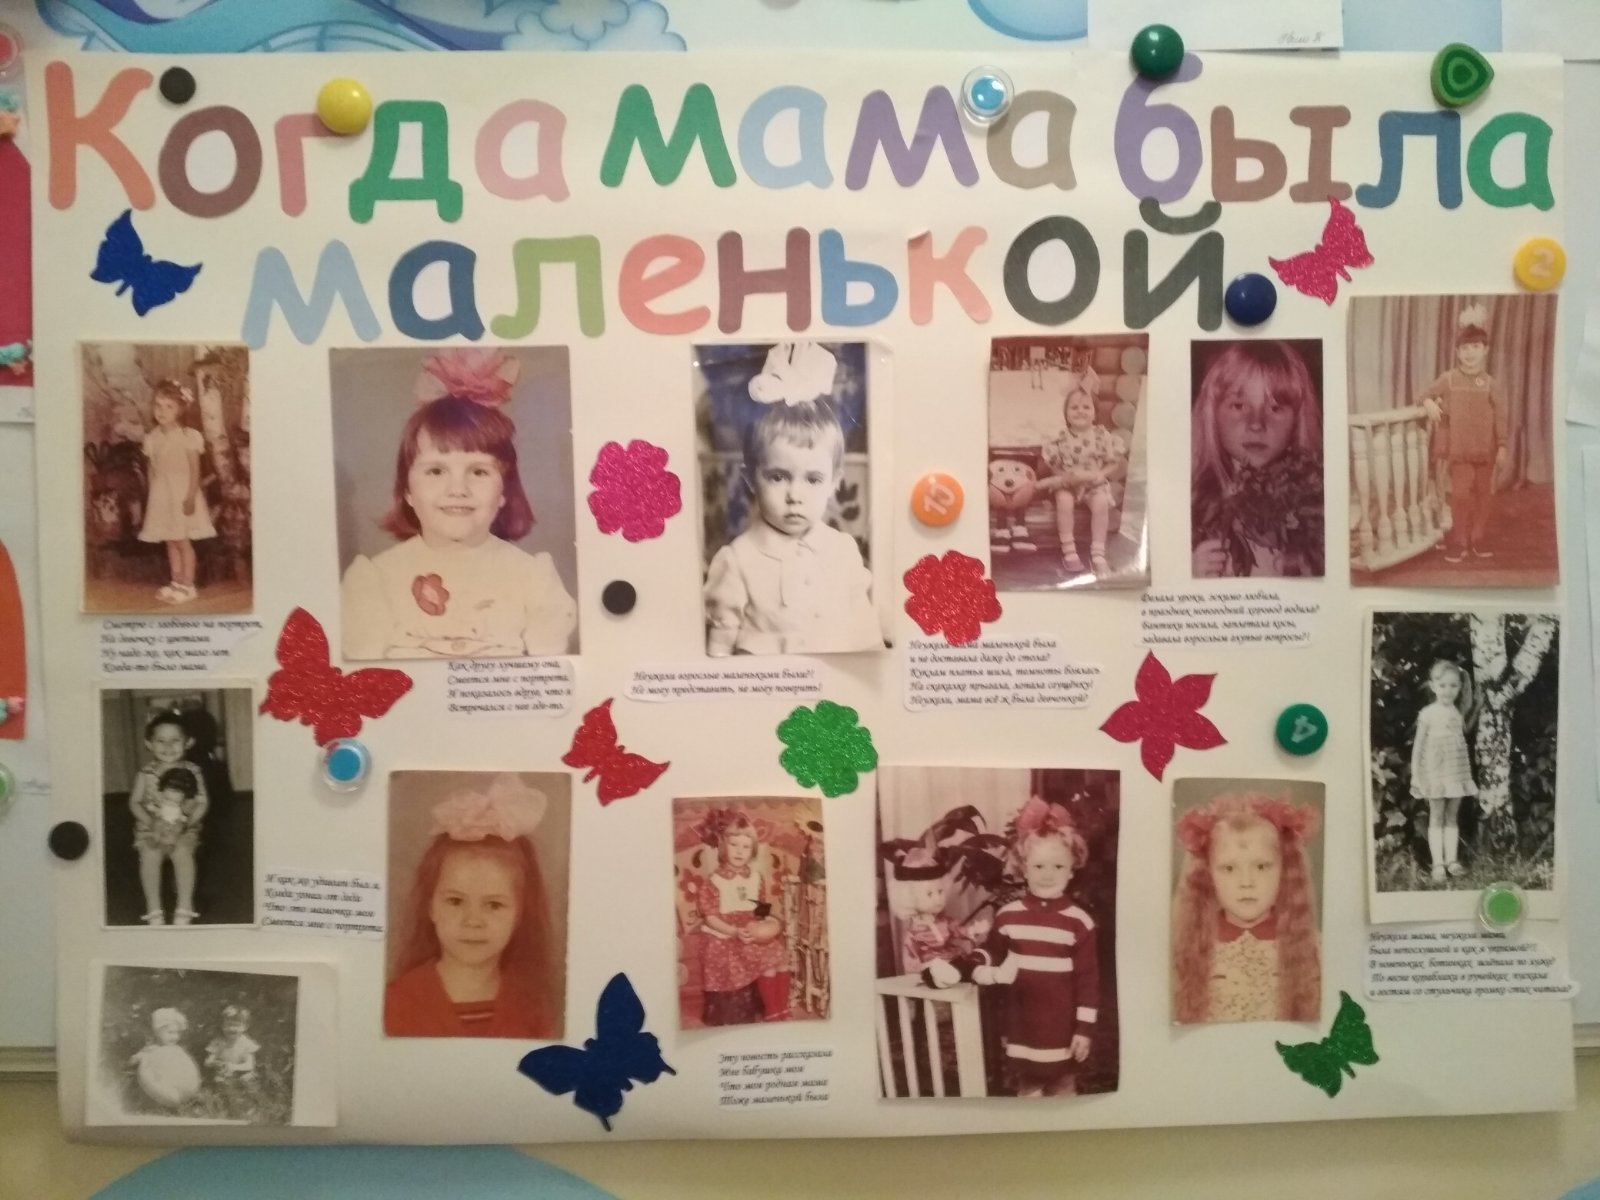 Моя мама тоже маленькой была. Плакат ко Дню матери в детском саду. Стенгазета ко Дню матери. Стенгазета ко Дню матери в детском саду. Плакат ко Дню матери в ДОУ.